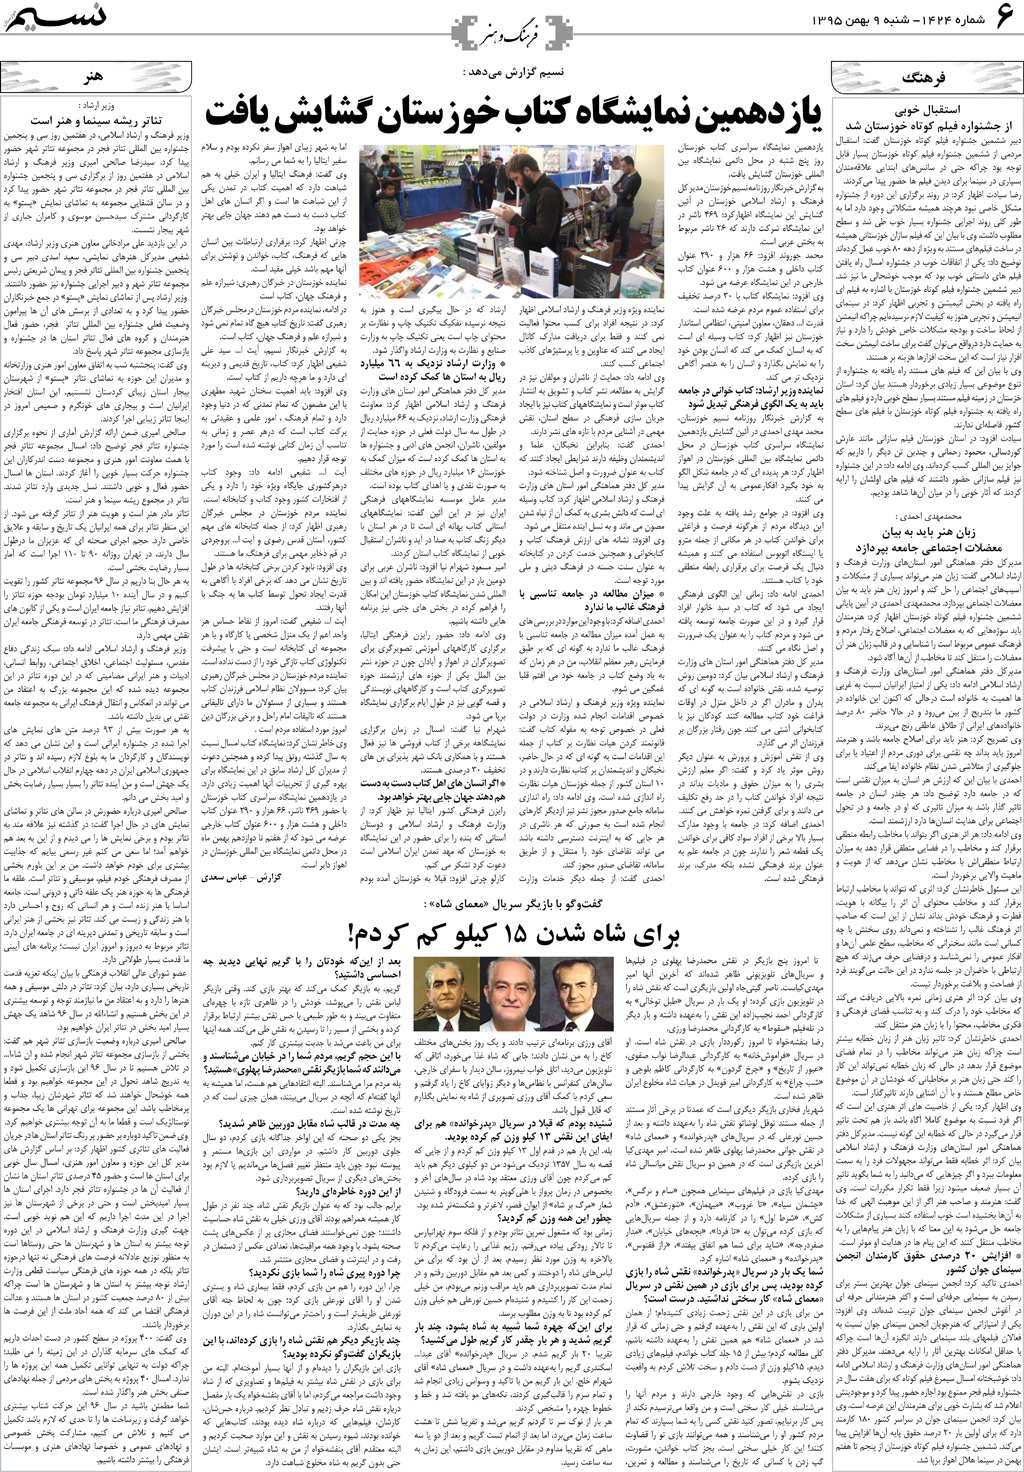 صفحه فرهنگ و هنر روزنامه نسیم شماره 1424